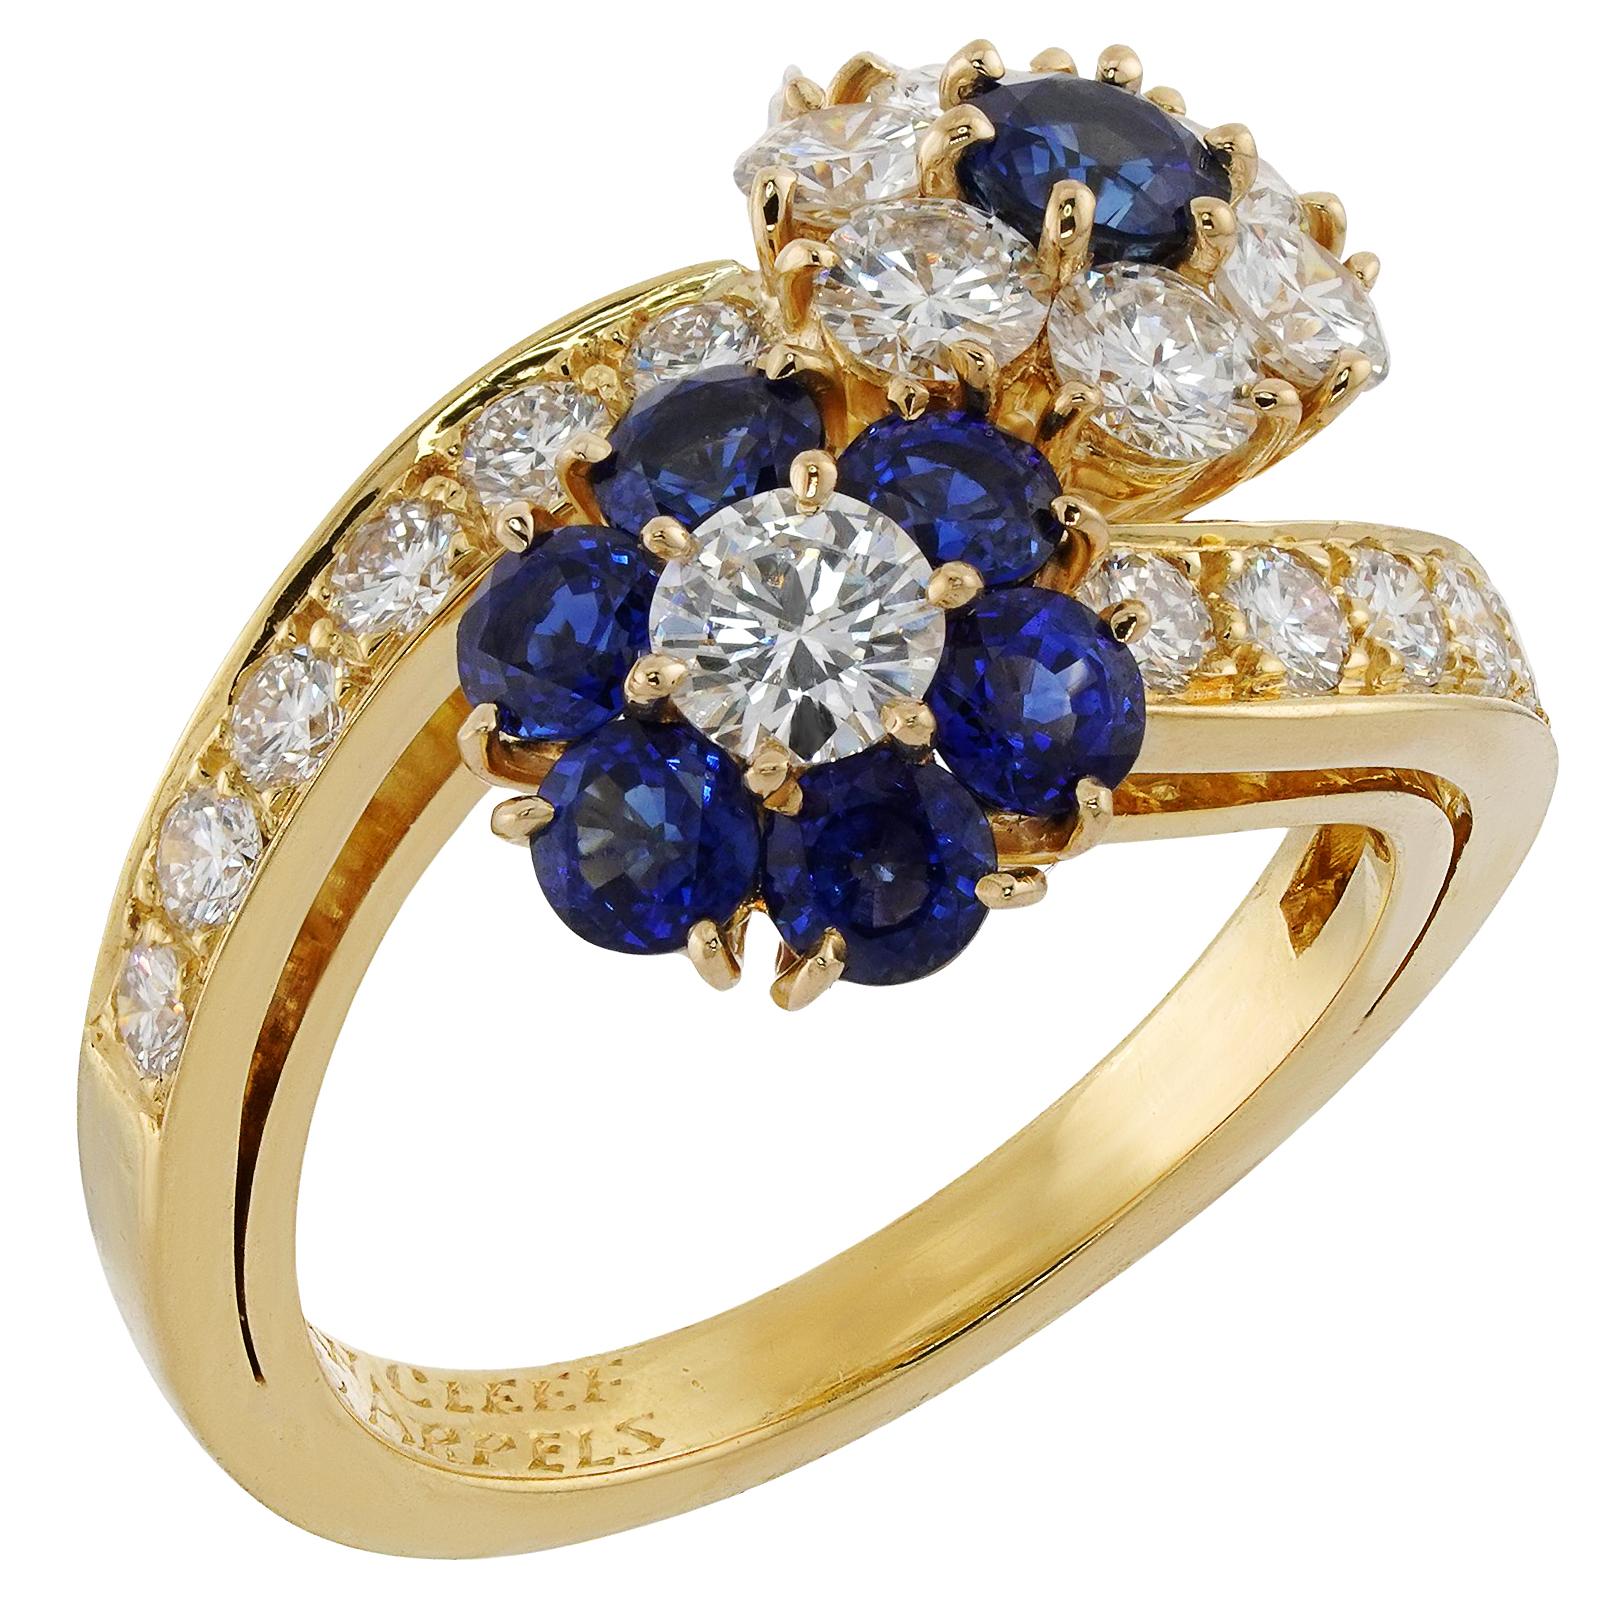 VAN CLEEF & ARPELS Bague fleur en or jaune avec diamants et saphirs bleus